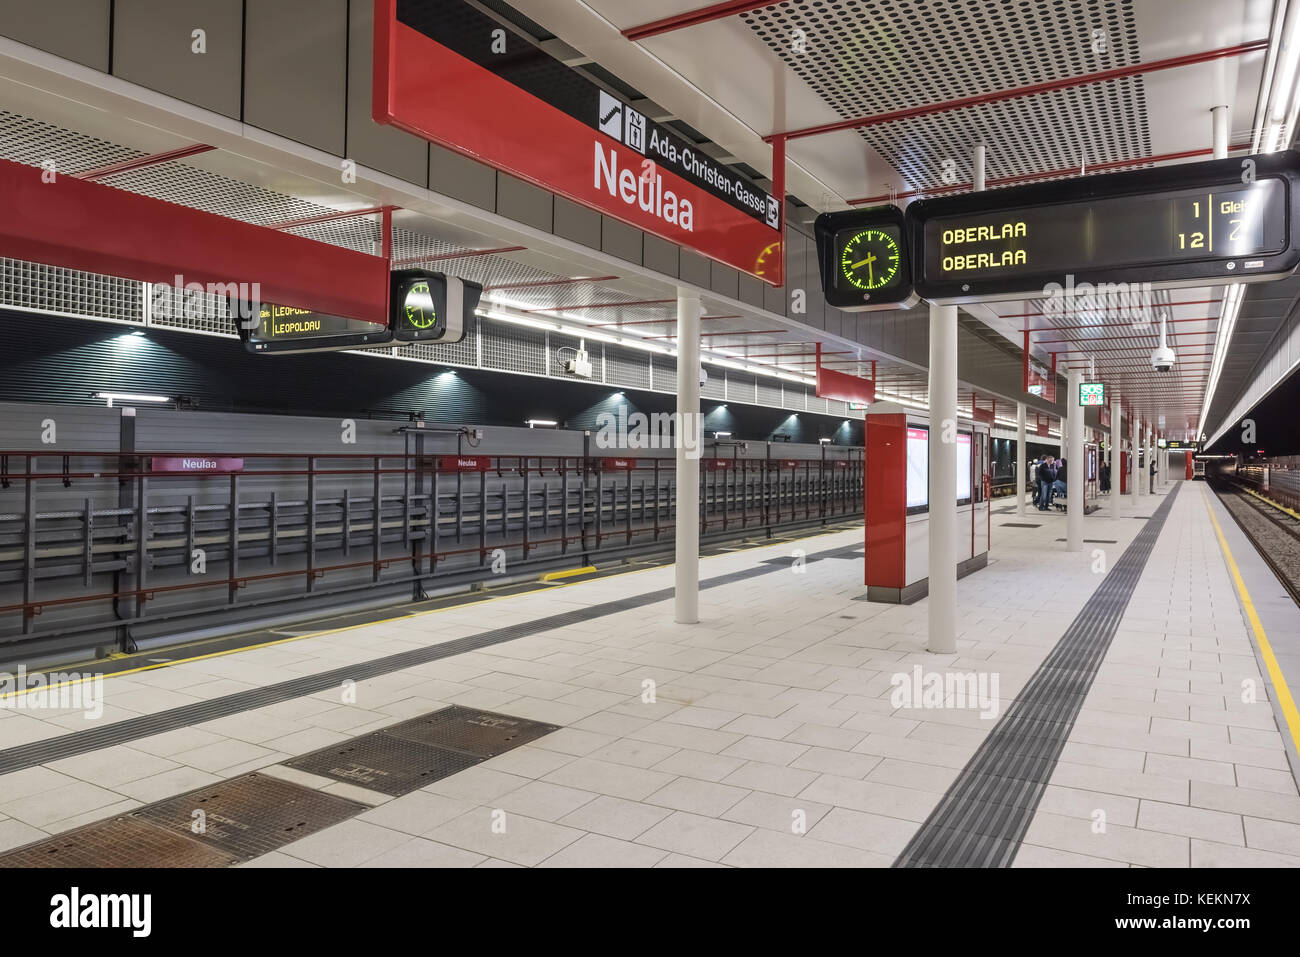 Wien, U-Bahn-Linie U1, Station Neulaa Stock Photo - Alamy